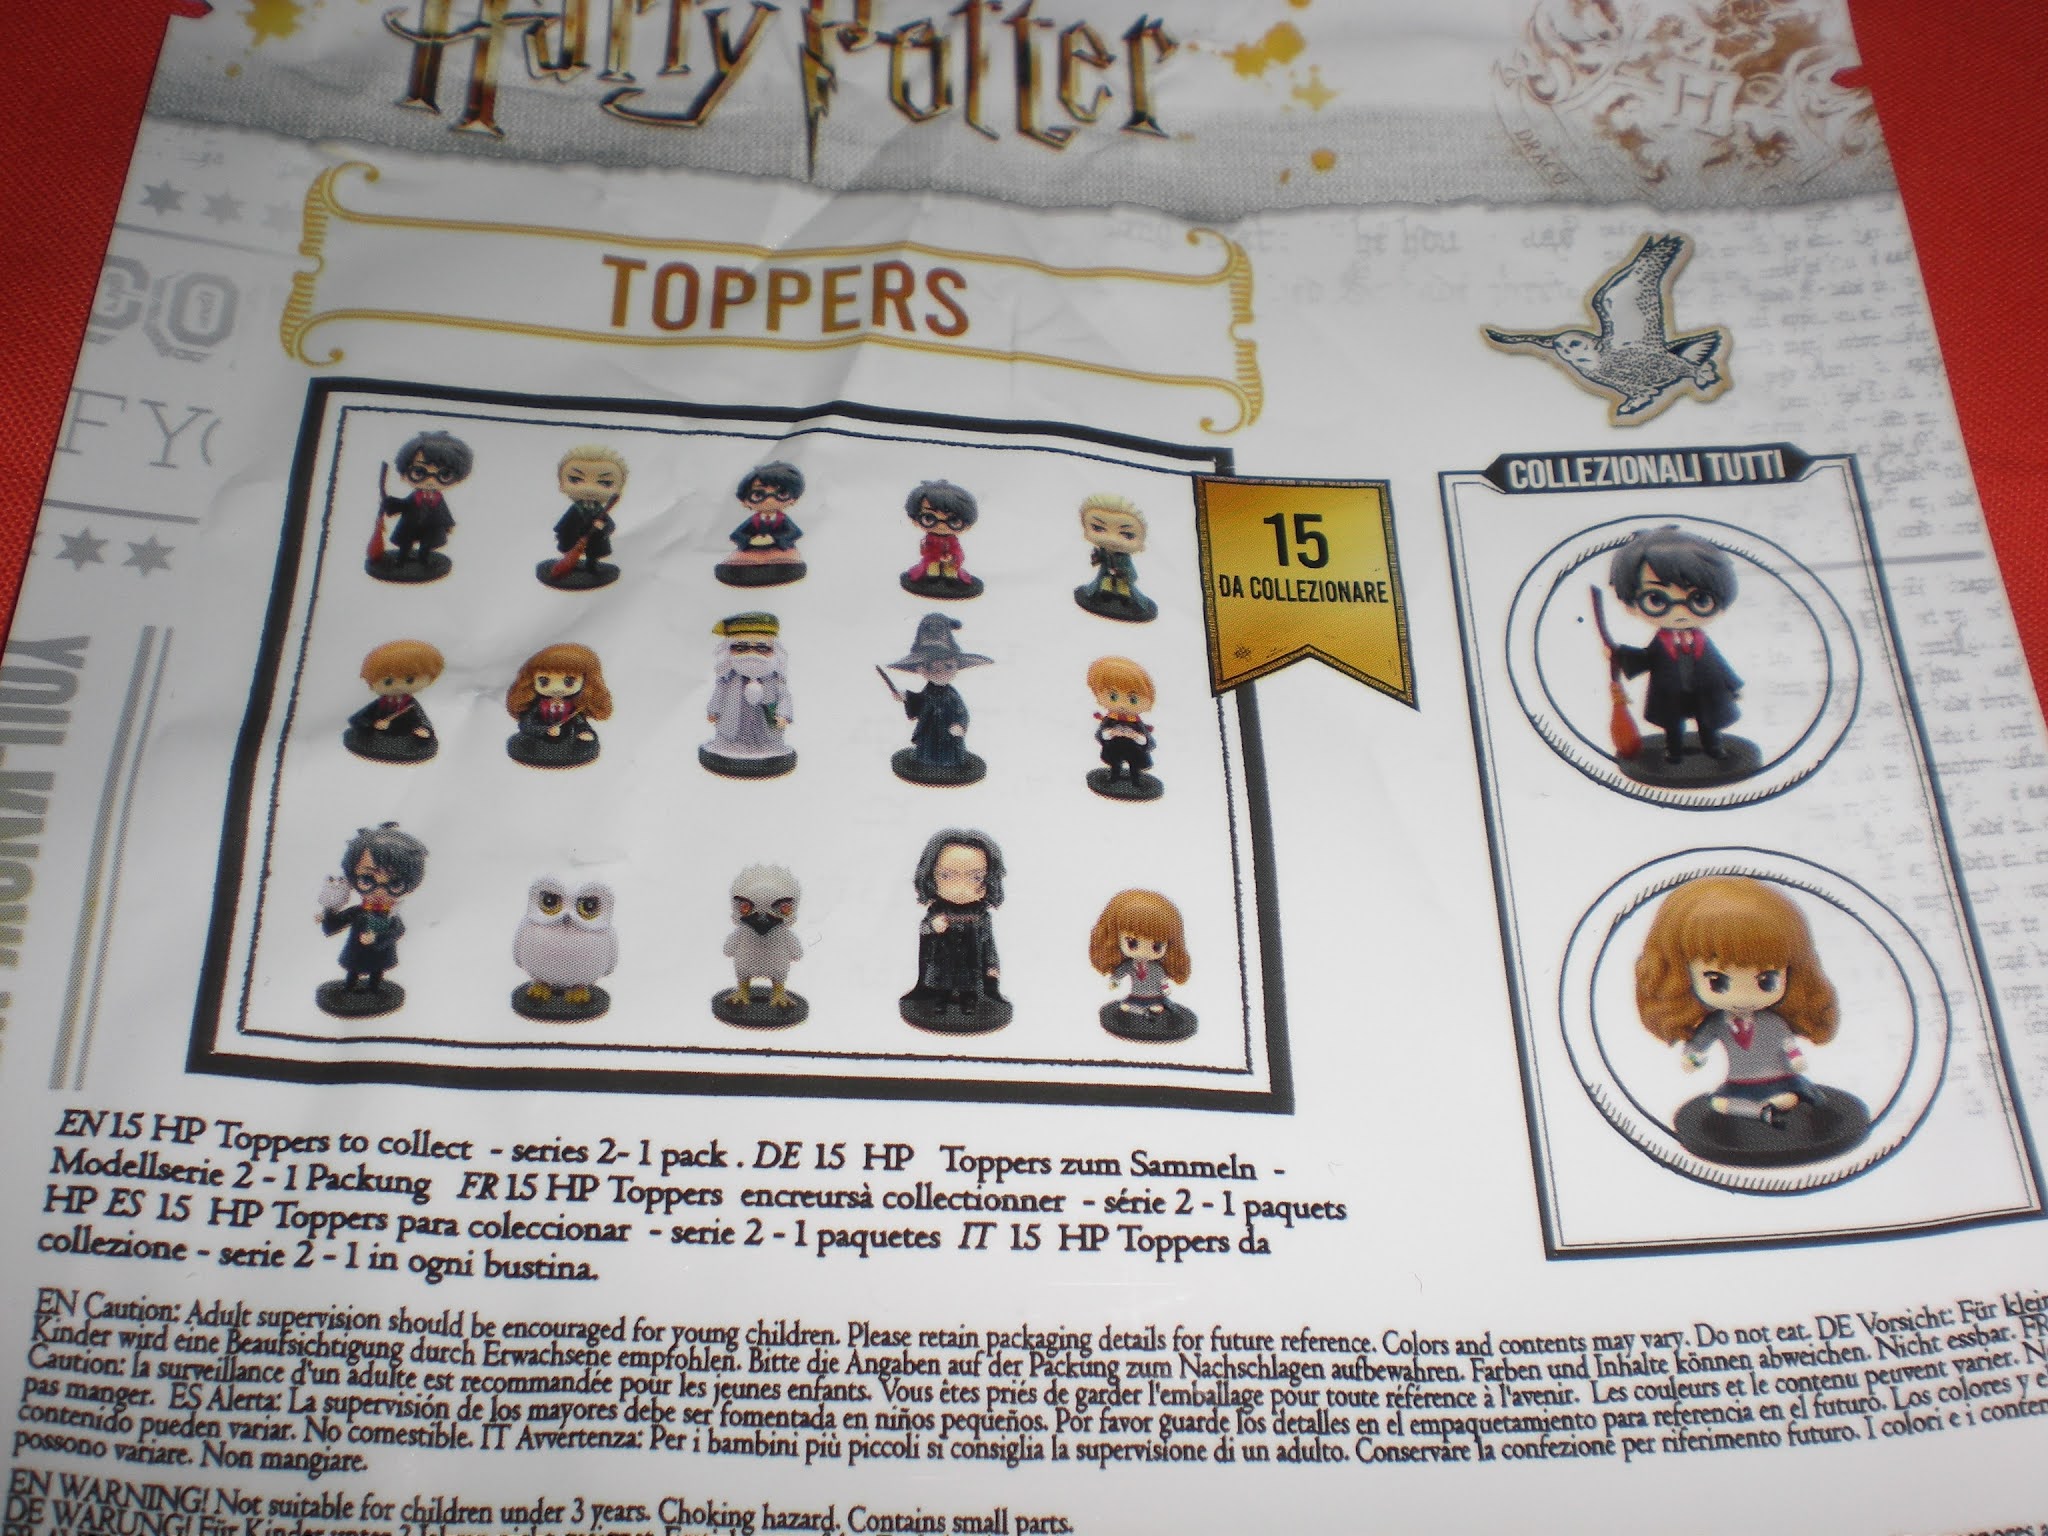 GIOCHI PREZIOSI Harry Potter - Magical Capsules - 1 Personaggio A Sorpresa  Con Accessori - Serie 3 a 15,99 €